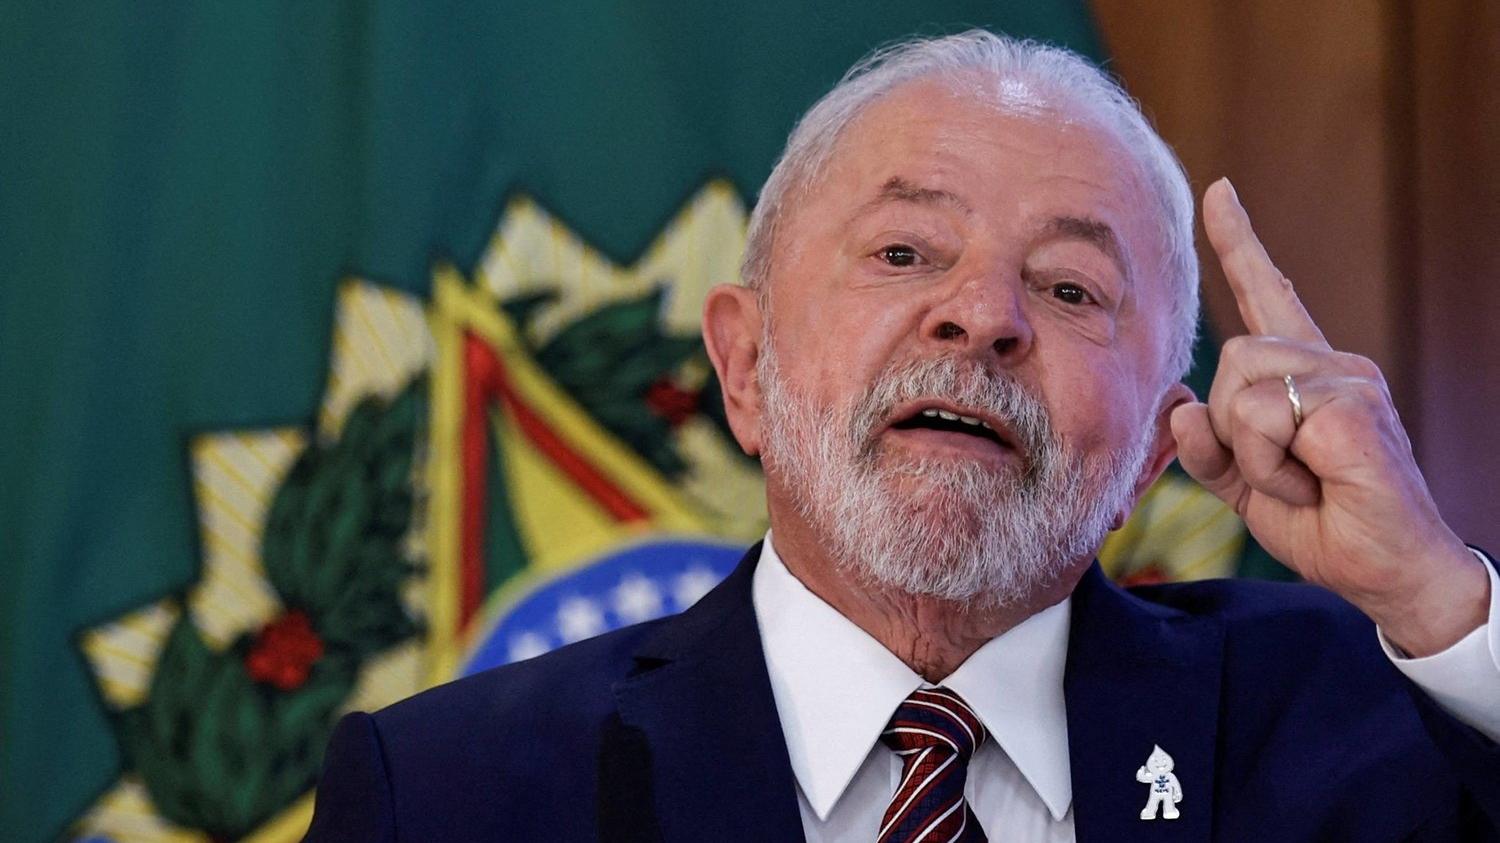 الرئيس البرازيلي يجدد اتهامه للاحتلال الإسرائيلي بارتكاب إبادة جماعية